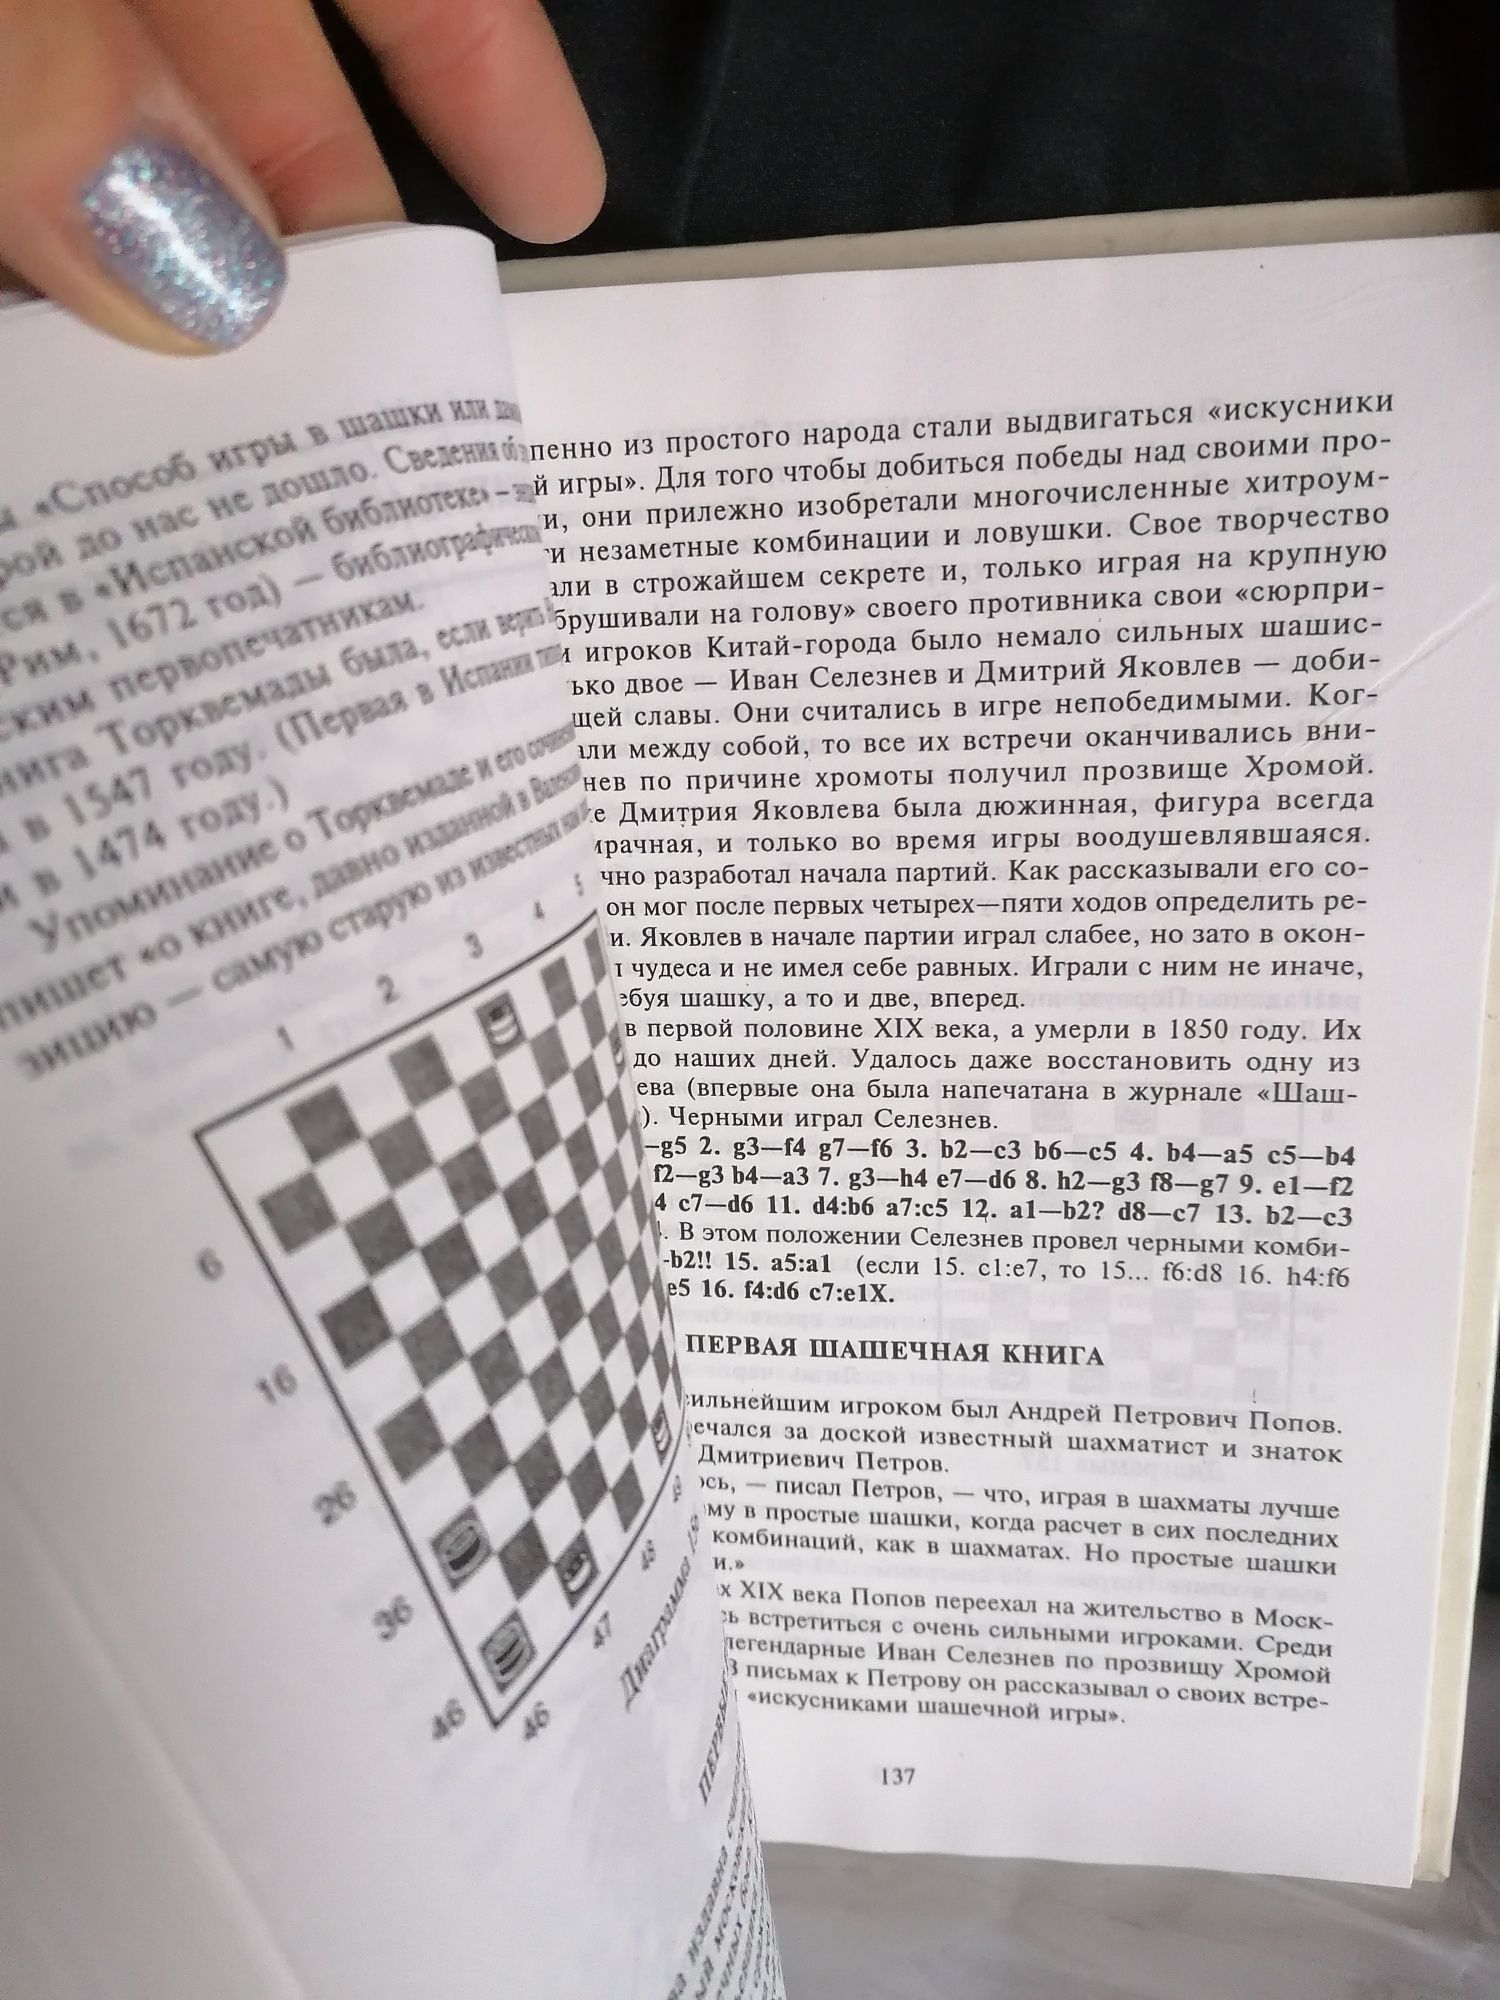 Гра шашки учебник шашечной игры